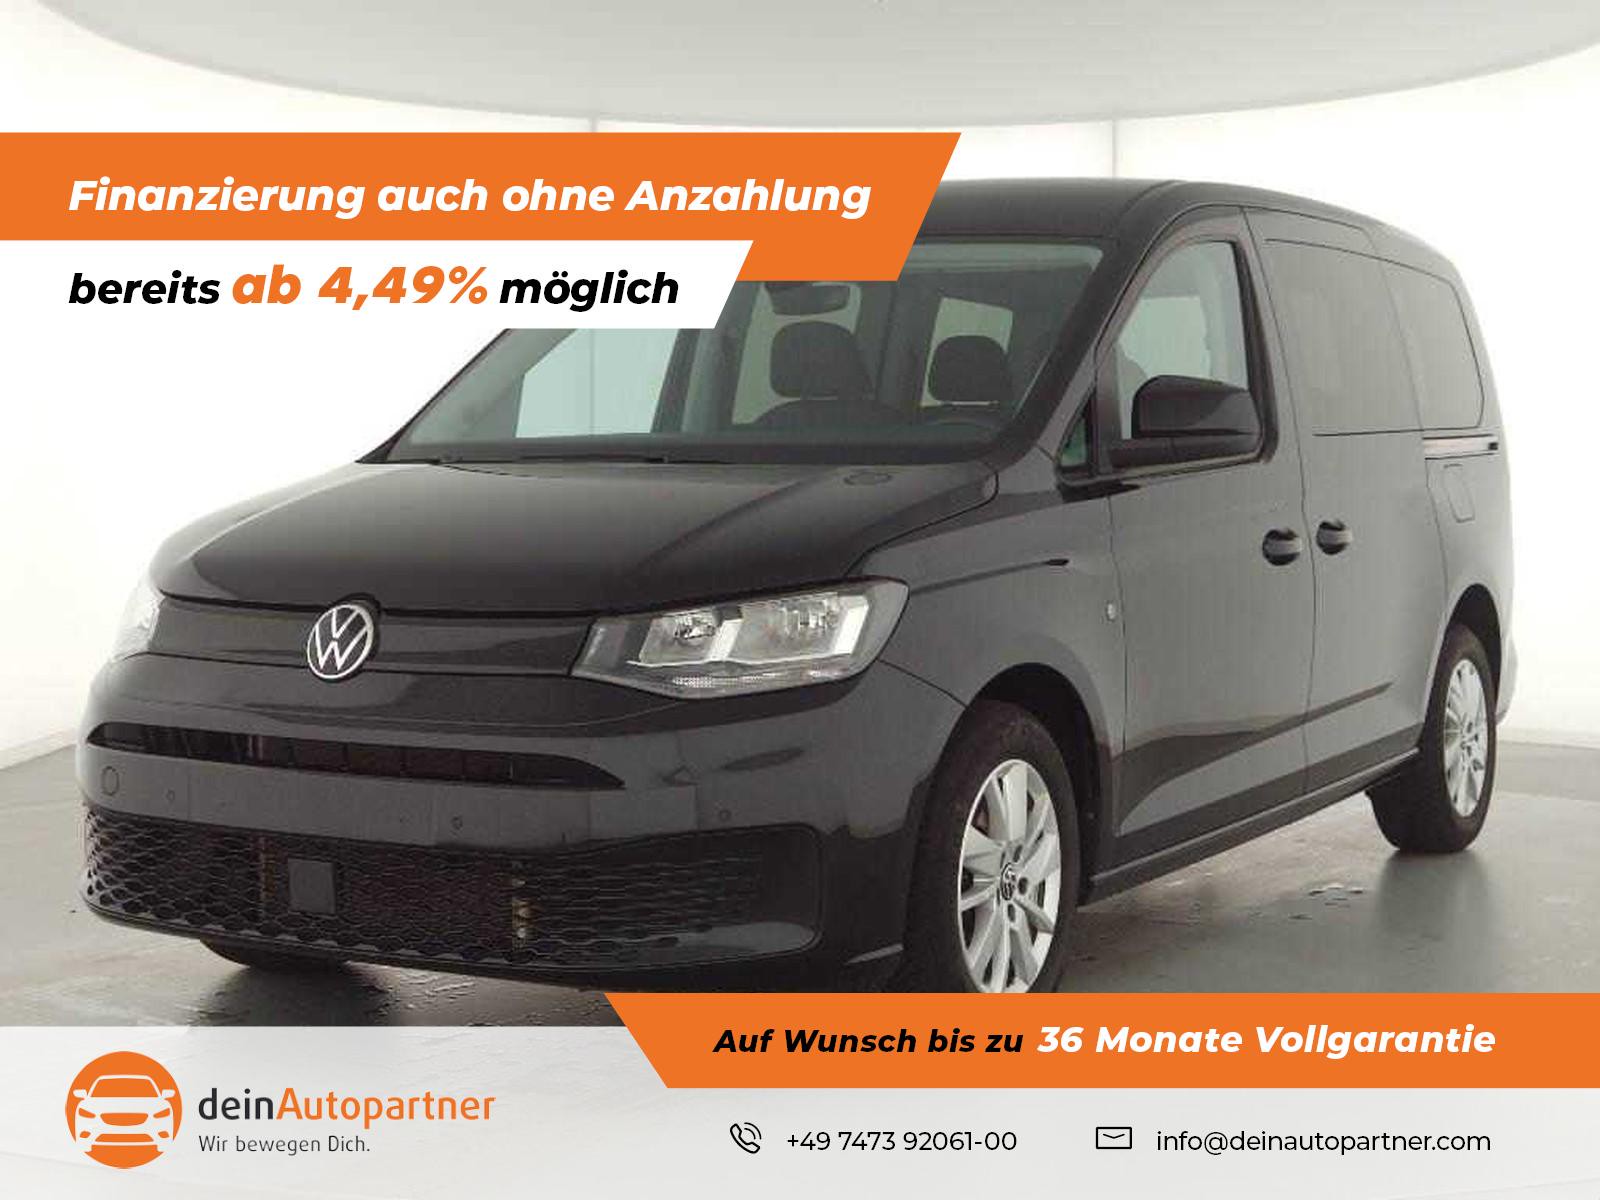 Volkswagen Caddy Maxi gebraucht kaufen in Mössingen Preis 33900 eur -  Int.Nr.: 1829 VERKAUFT